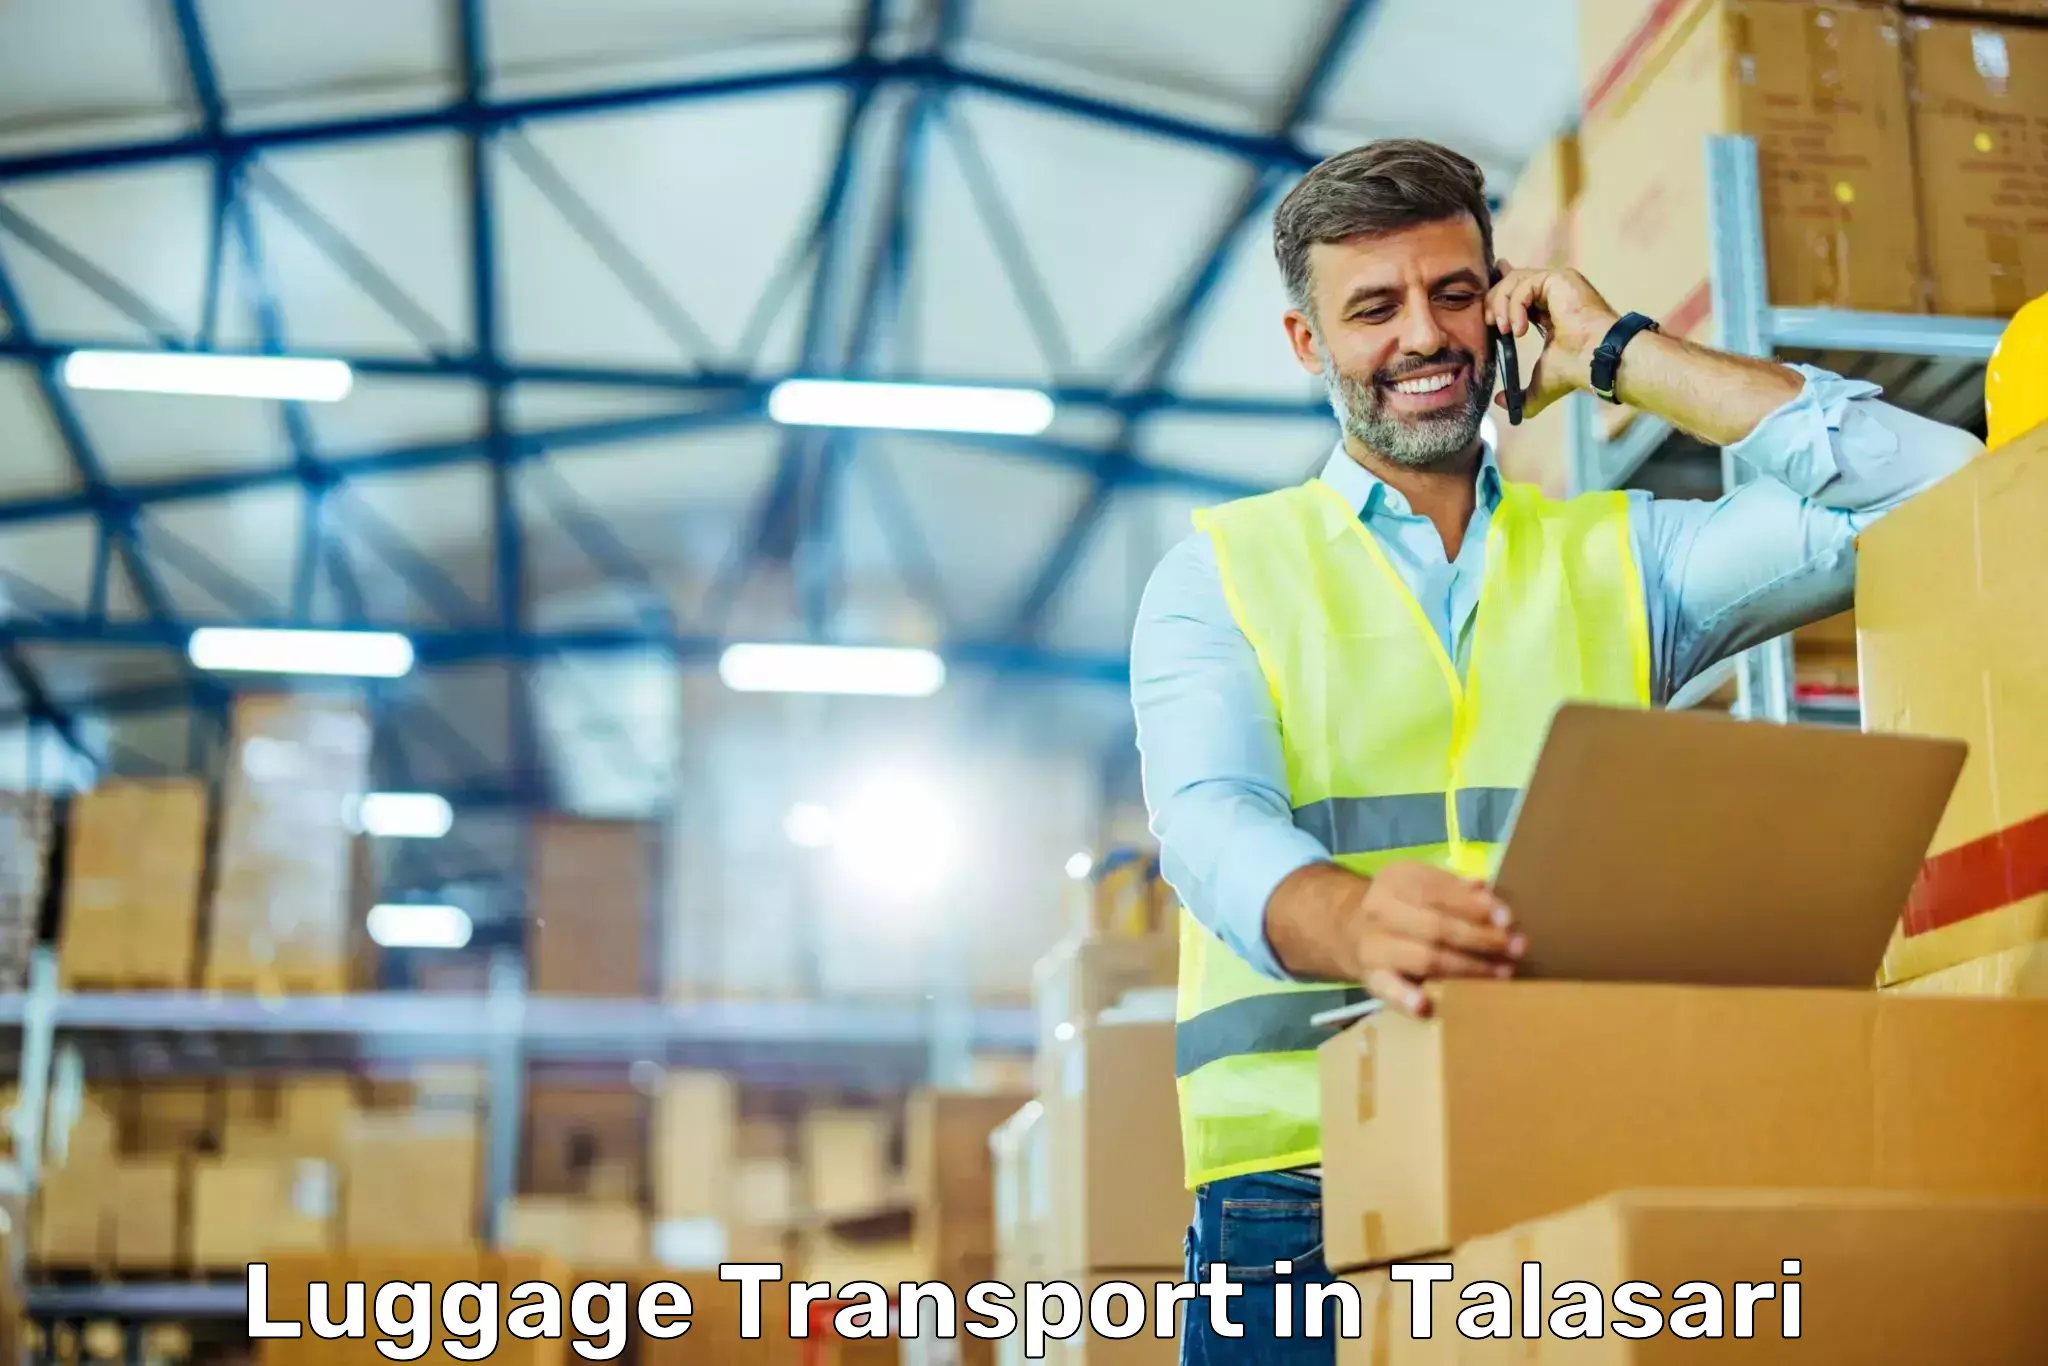 Luggage transport company in Talasari